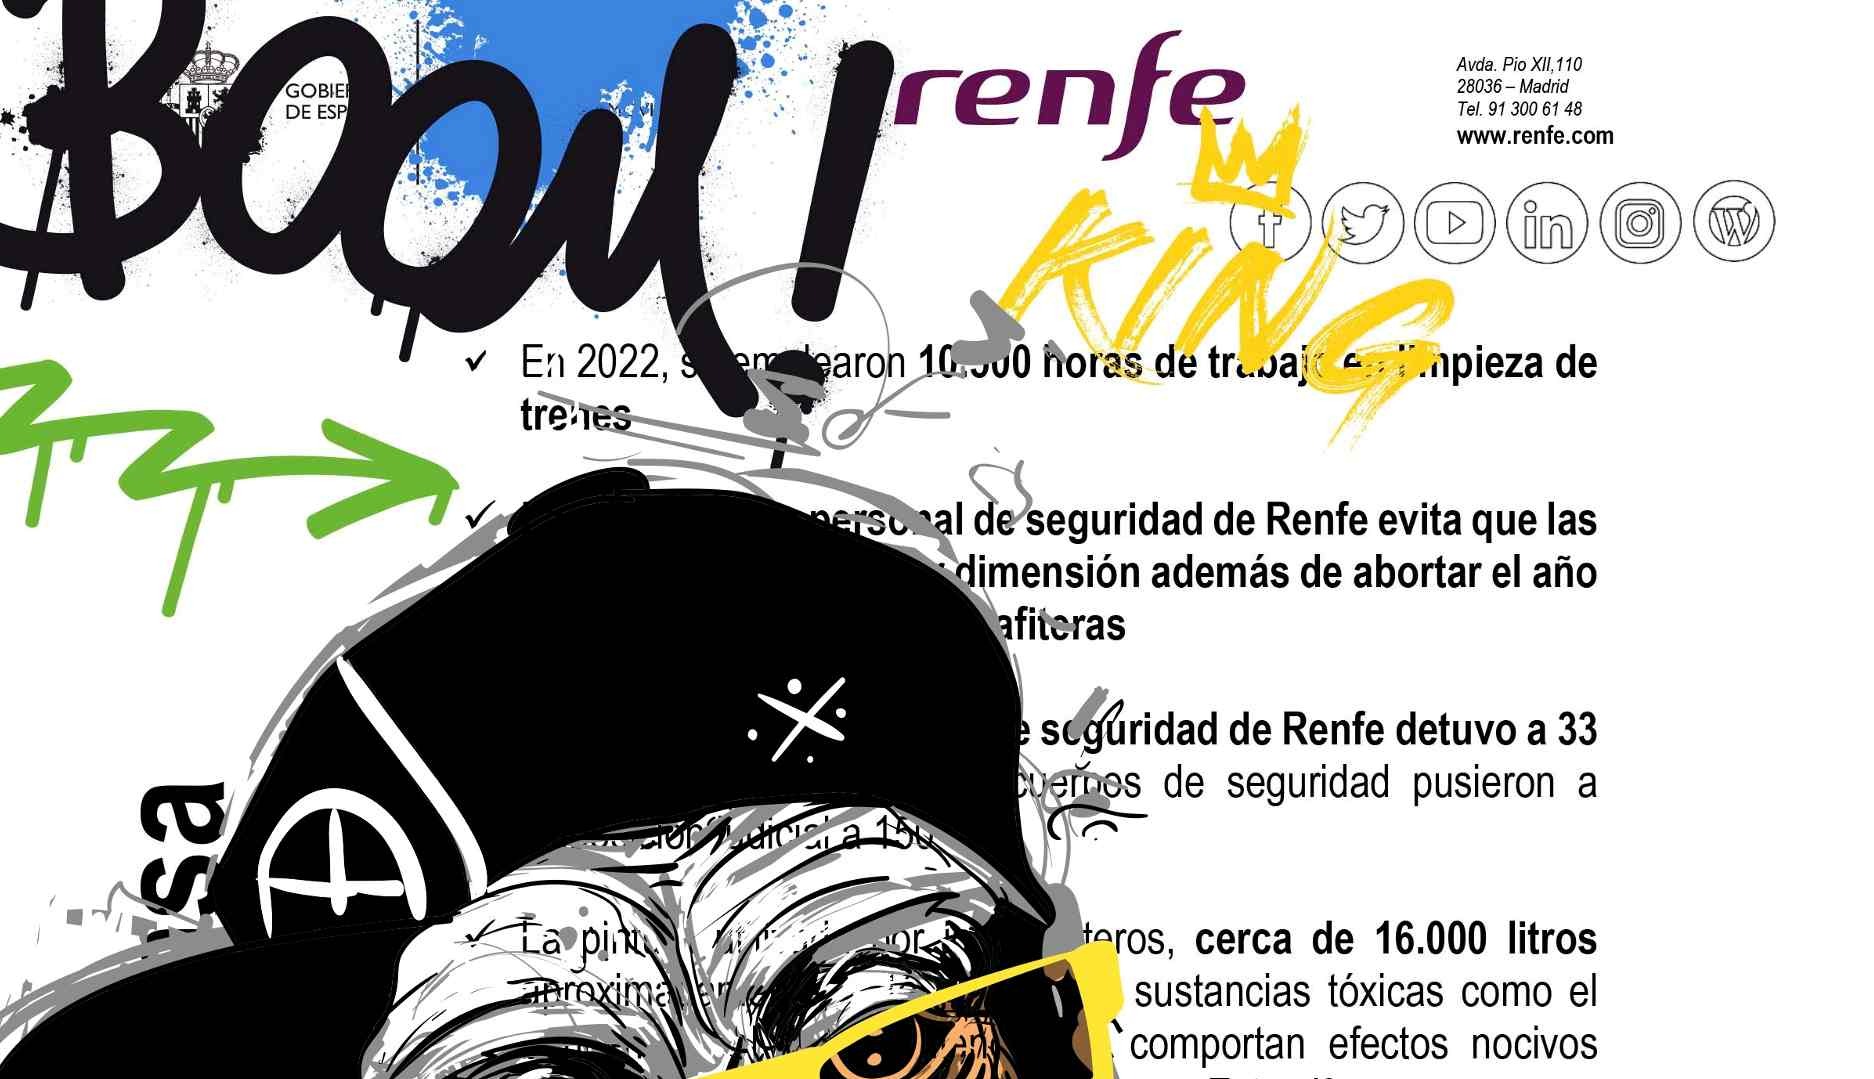 Renfe ‘vandaliza’ su propia nota de prensa y demuestra que también hay creatividad en la relación con los medios